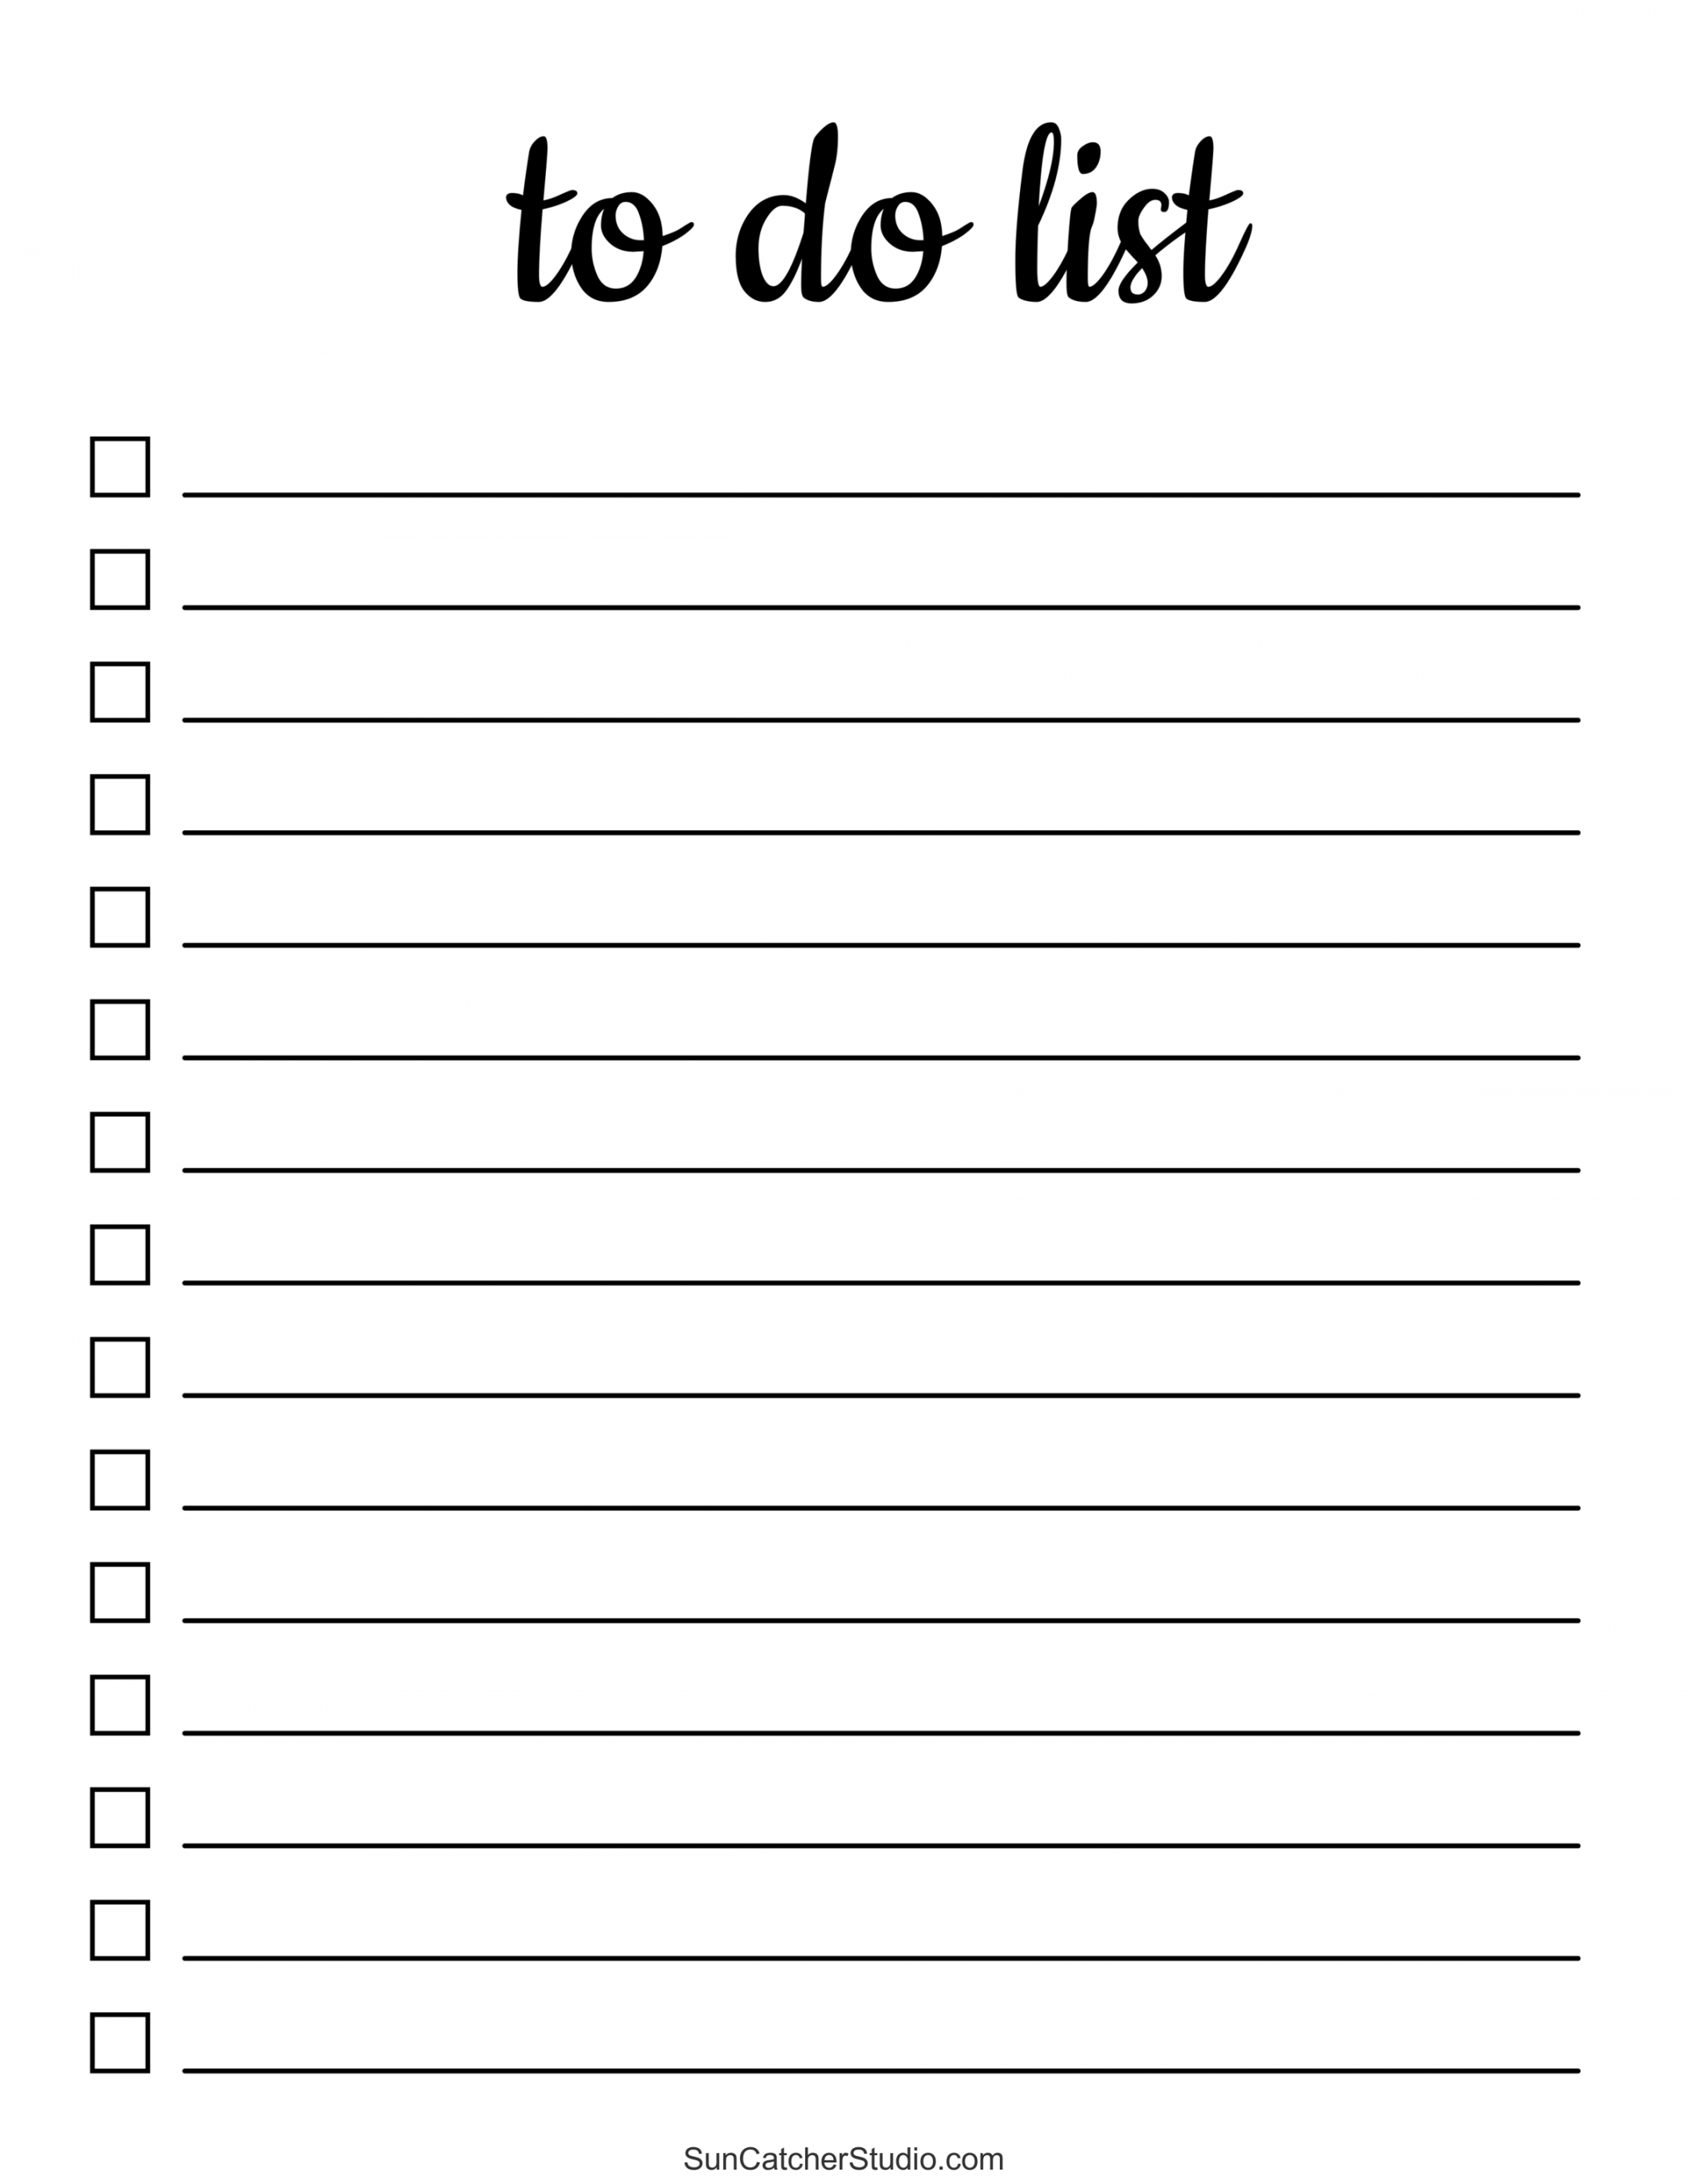 To Do List Free Printable - Printable - To Do List (Free Printable PDF Templates) – Things To Do – DIY